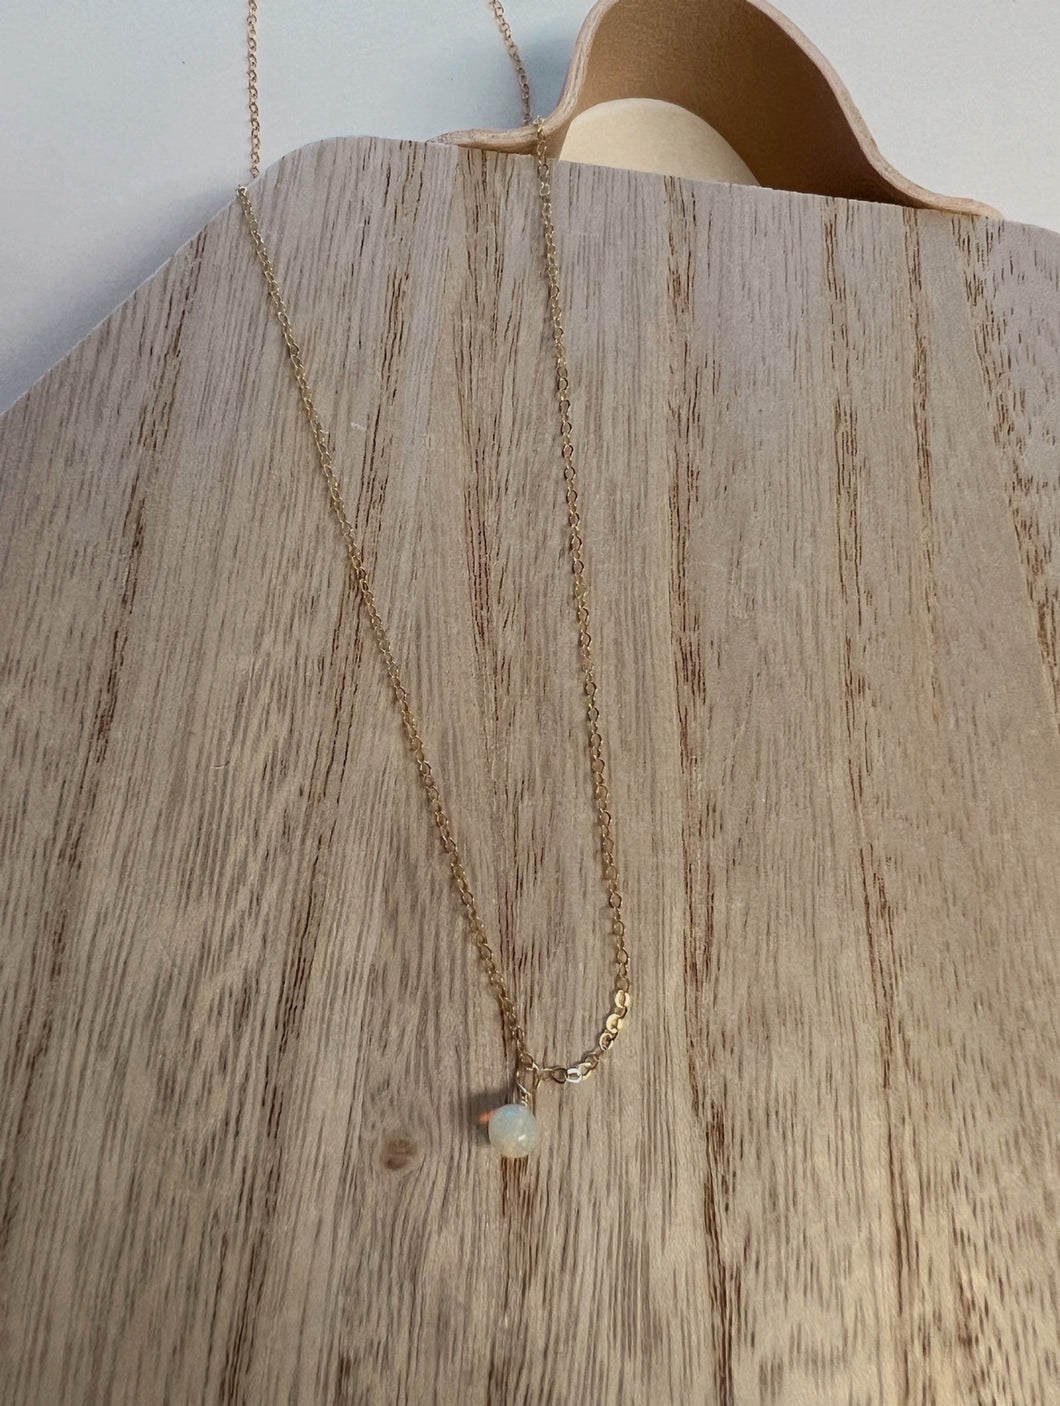 Ethiopian Opal Necklace no. 1